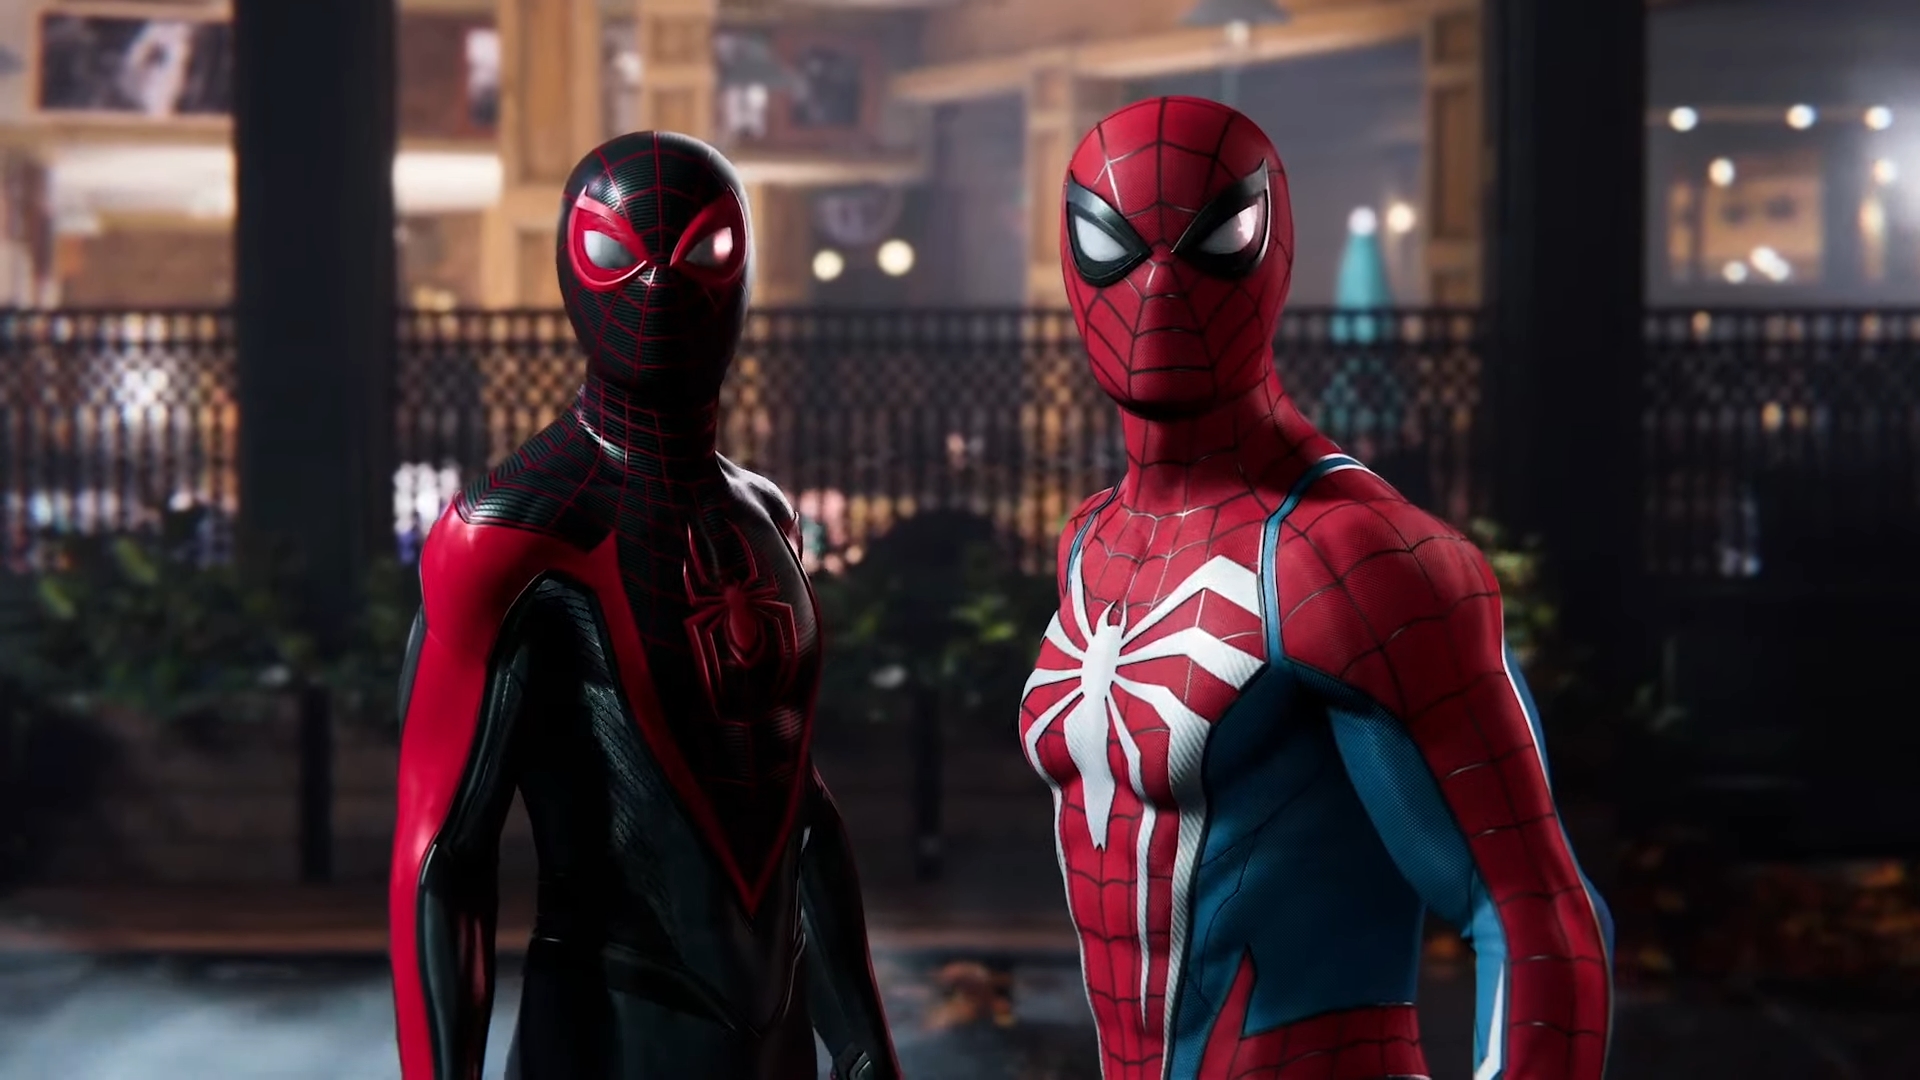 Capture d'écran de Marvel's Spider-Man 2 montrant Peter Parker et Miles Morales côte à côte dans leurs costumes respectifs de Spider-Man.